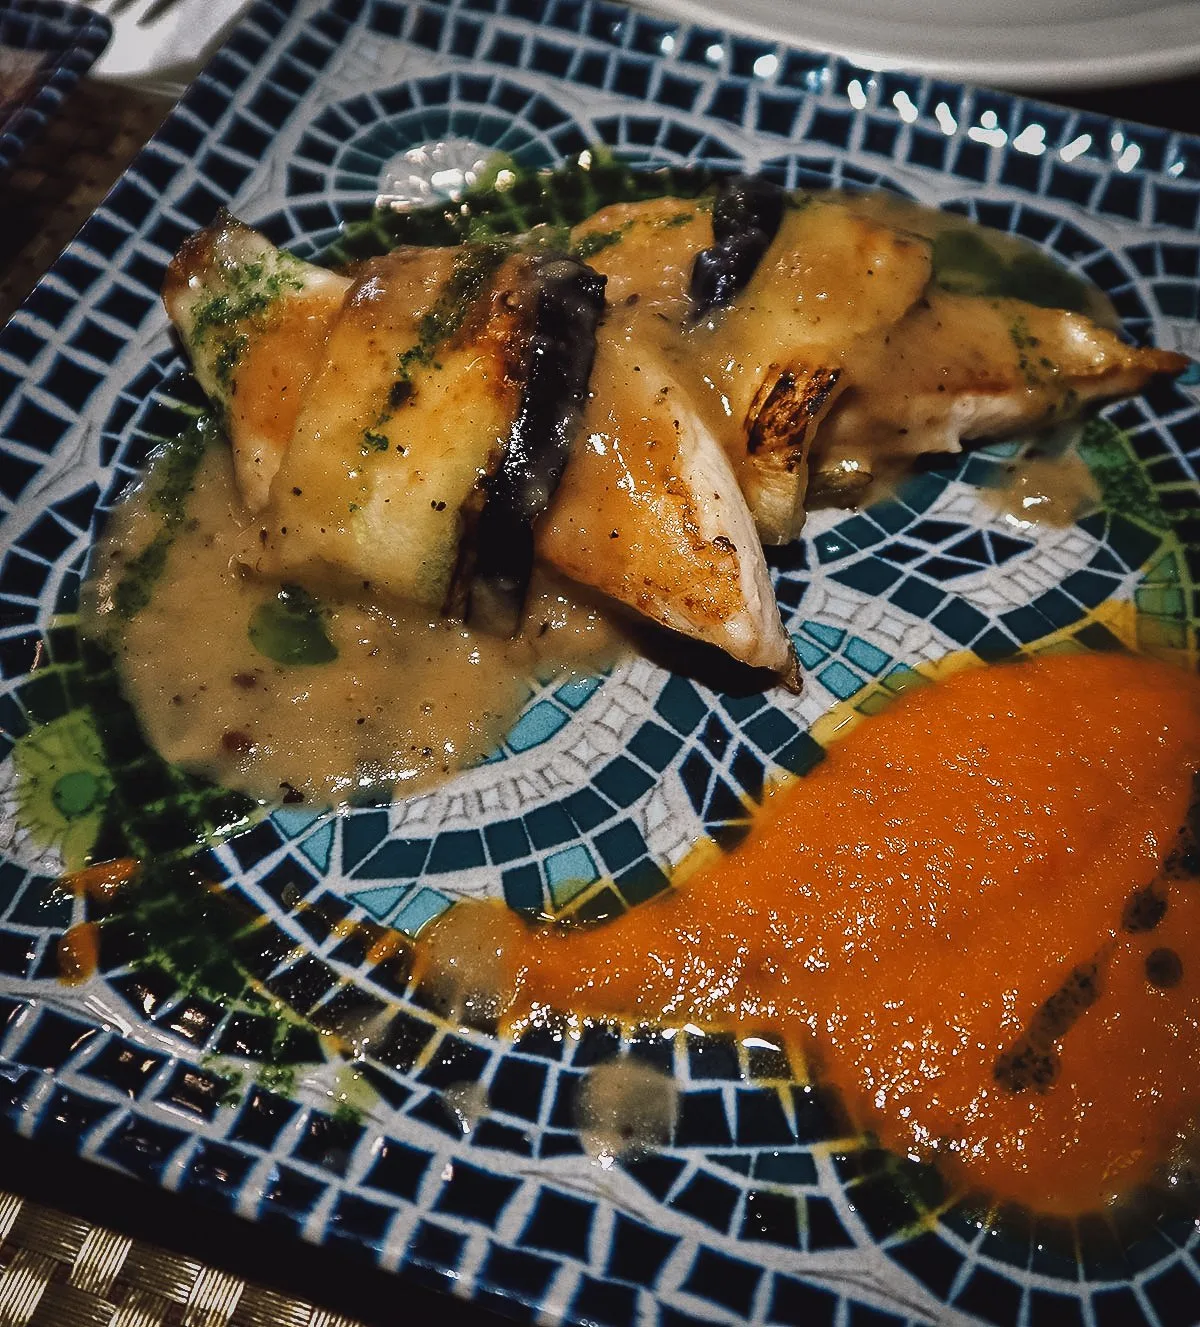 Fish tapas dish at a restaurant in Malaga